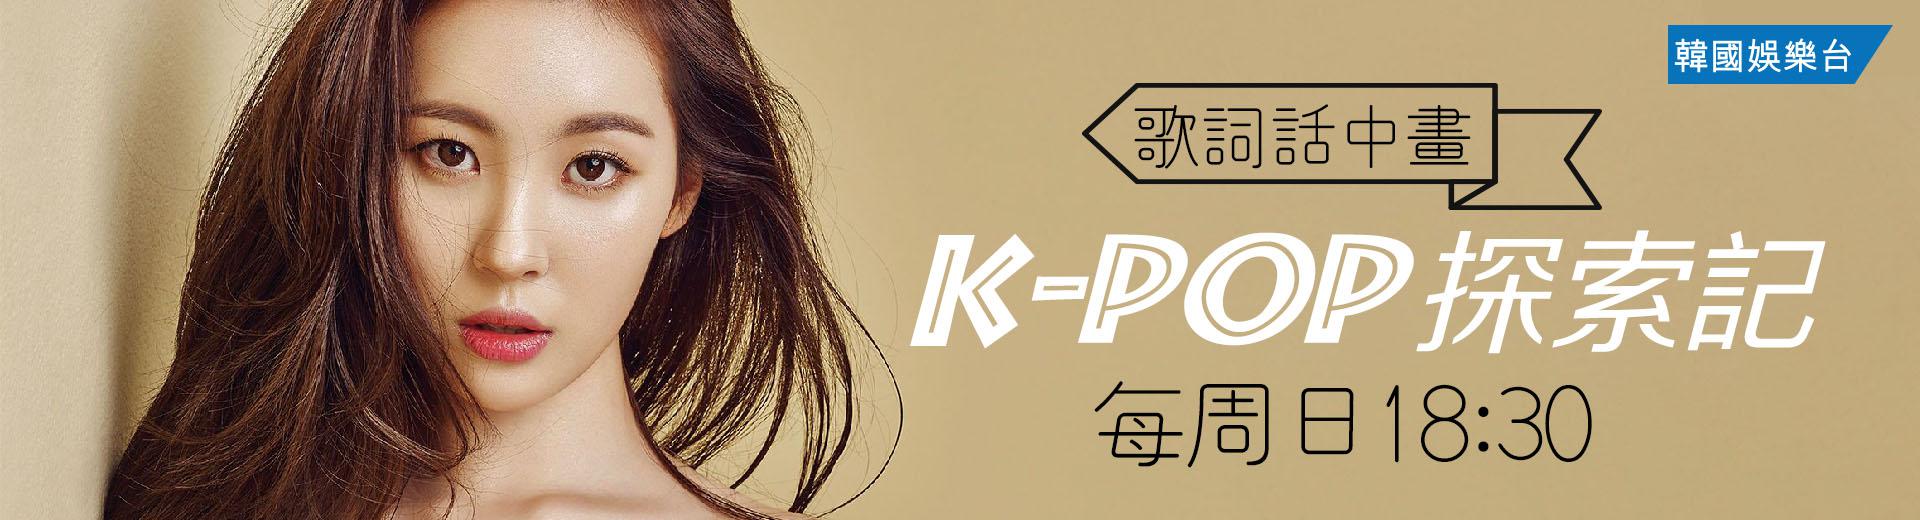 K-Pop 探索記/KM Special: S.I.S